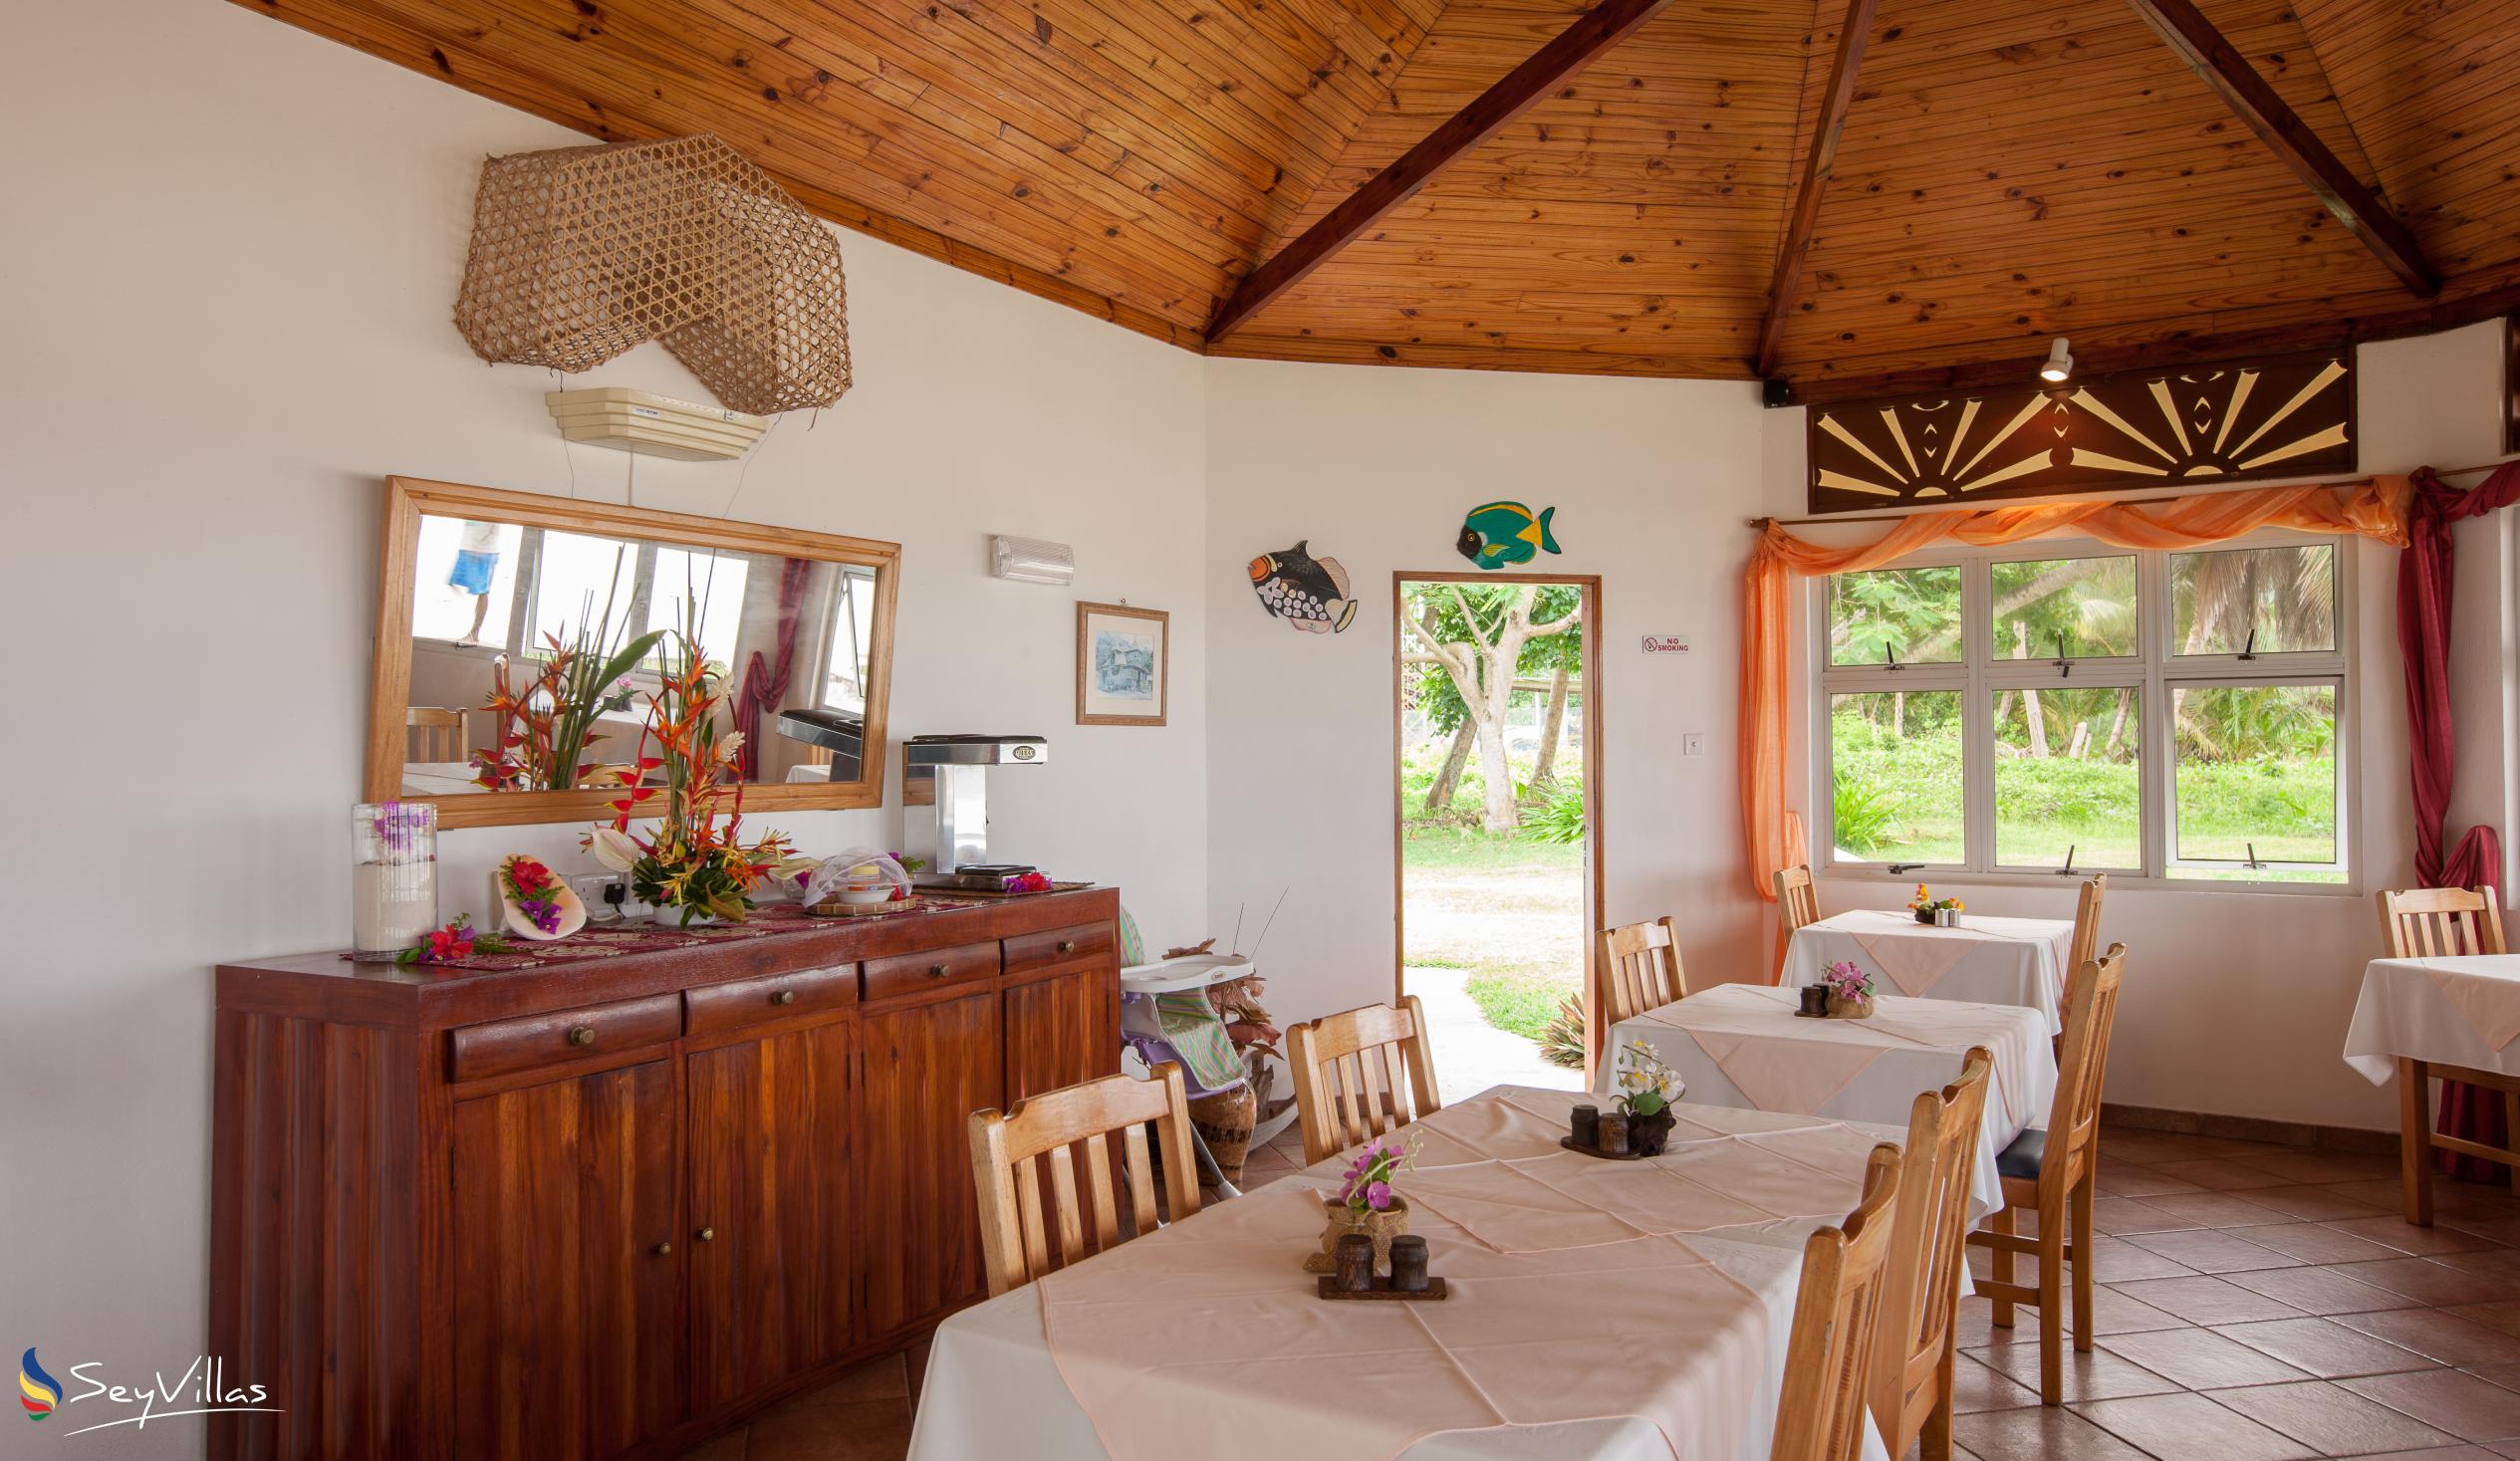 Foto 14: Beach Villa Guesthouse - Innenbereich - Praslin (Seychellen)